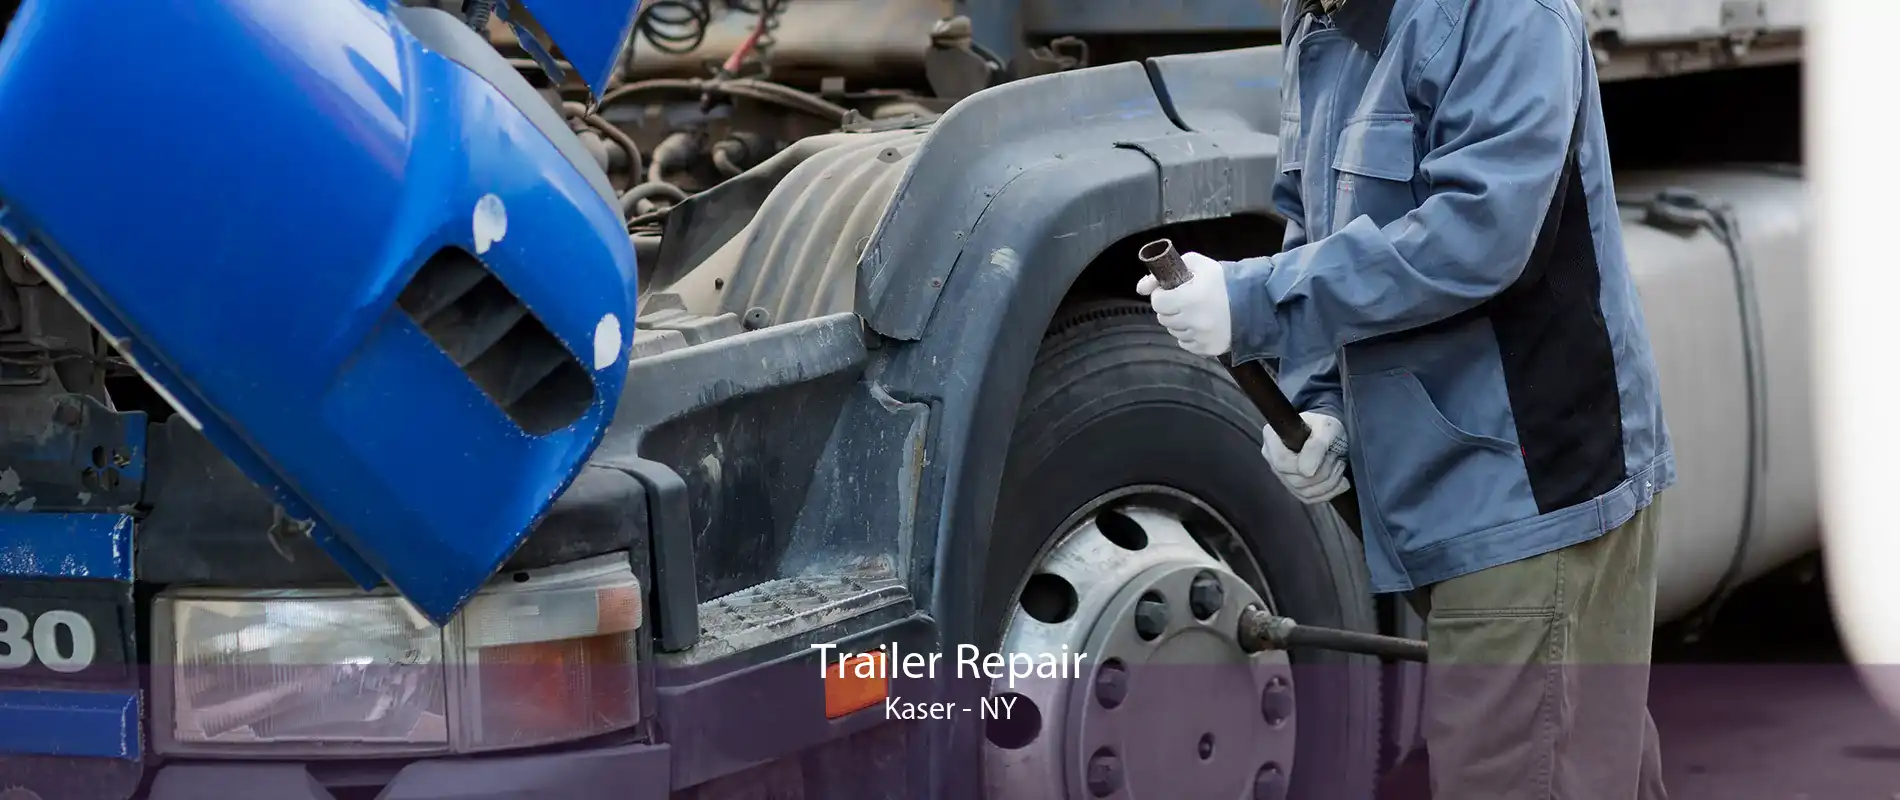 Trailer Repair Kaser - NY